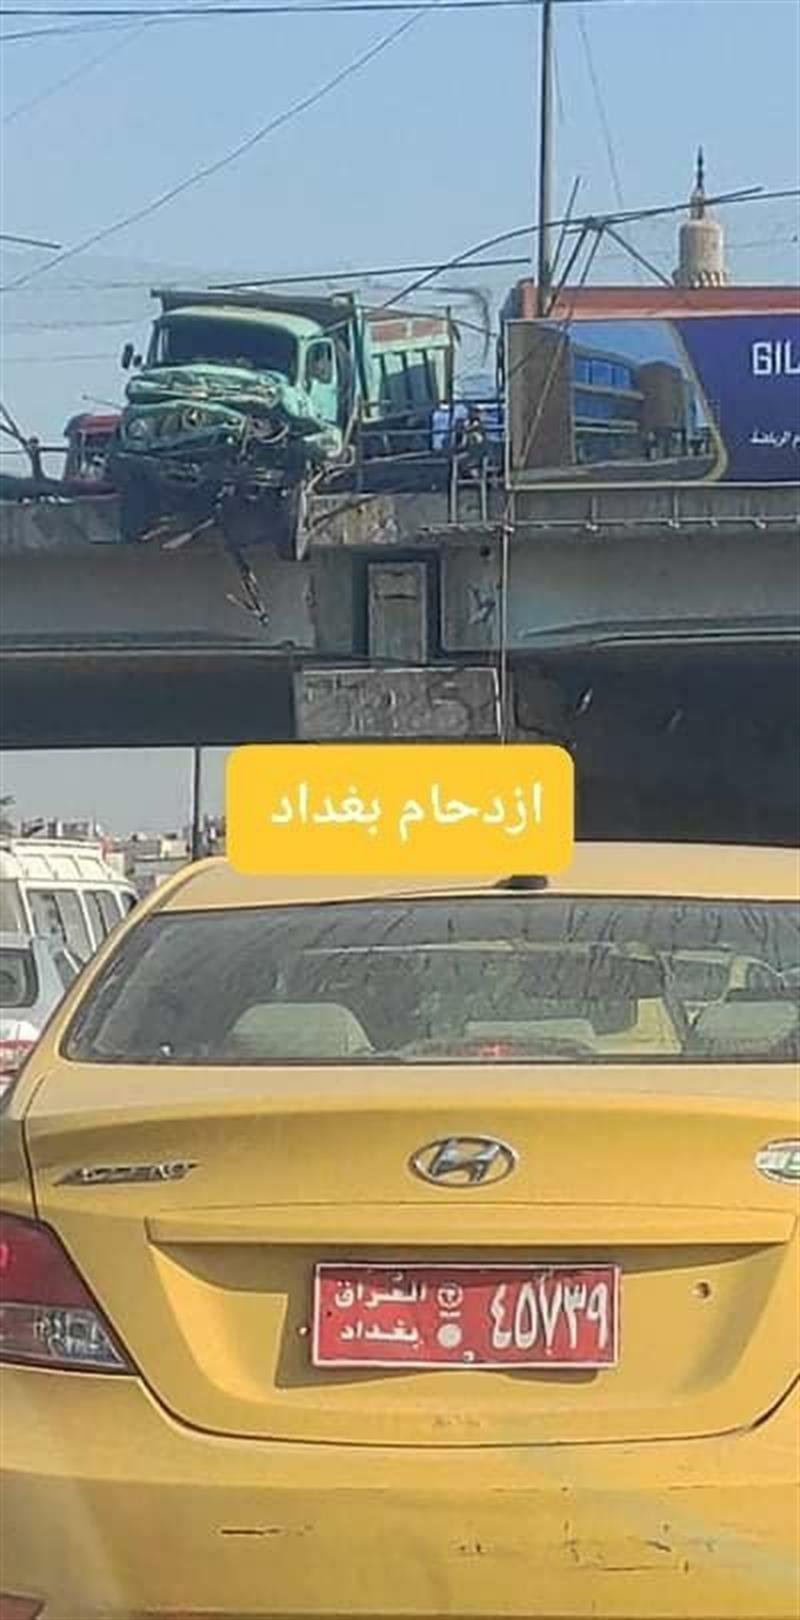 حادث مروري يتسبب بازدحام شديد على جسر محمد القاسم ببغداد (صور)